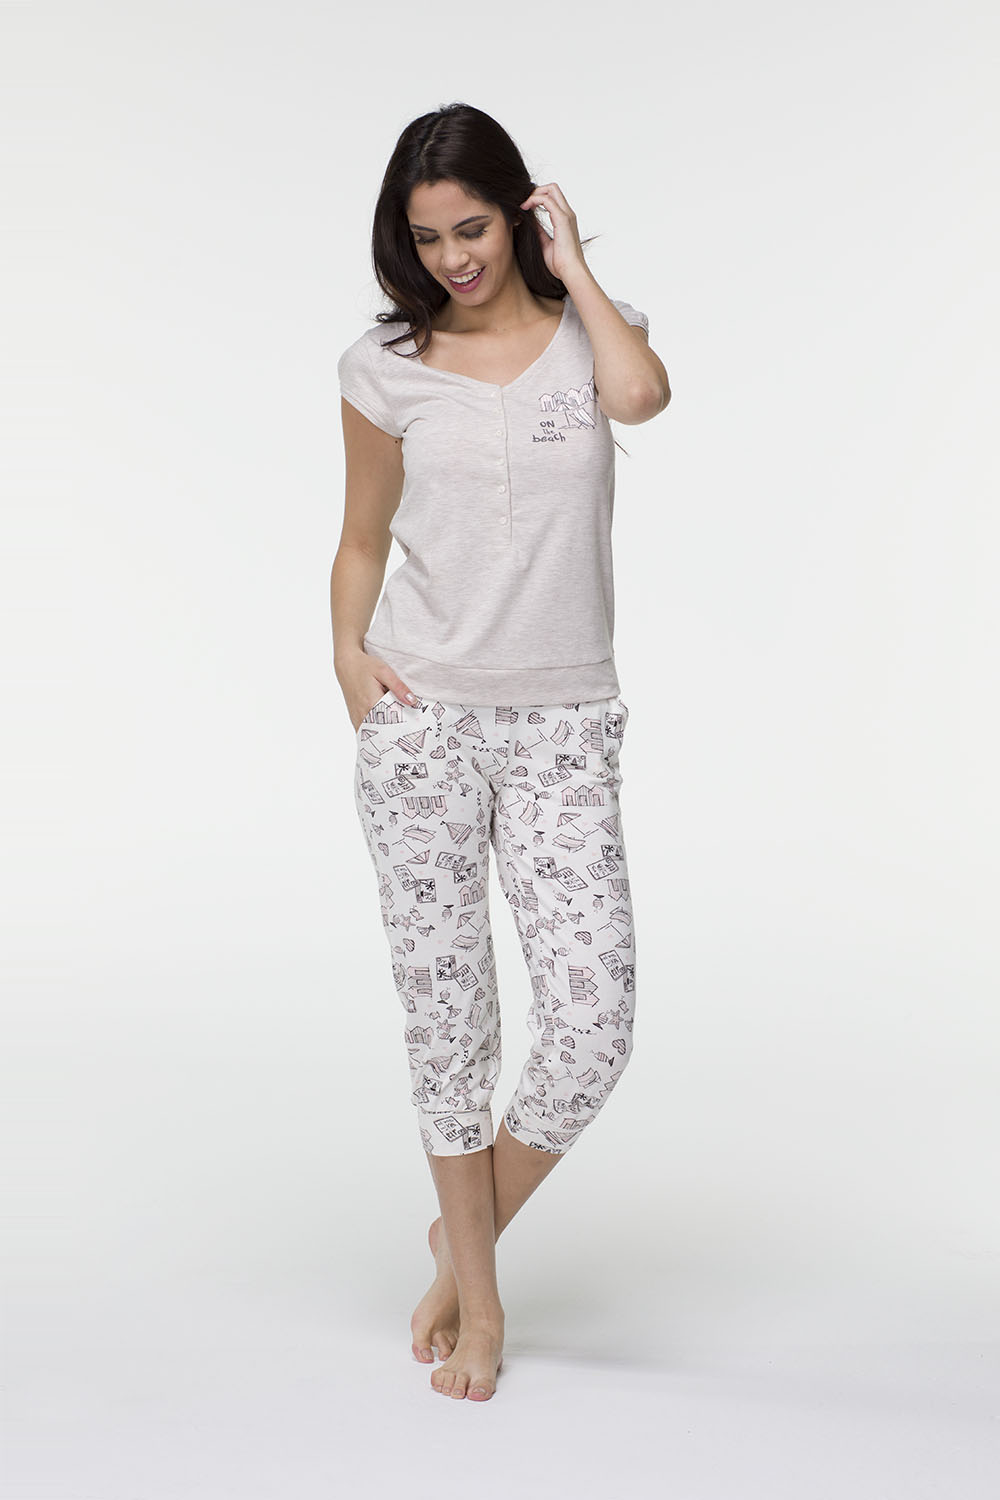 Hays Ribiko Kadın Penye Midi Pijama Takımı